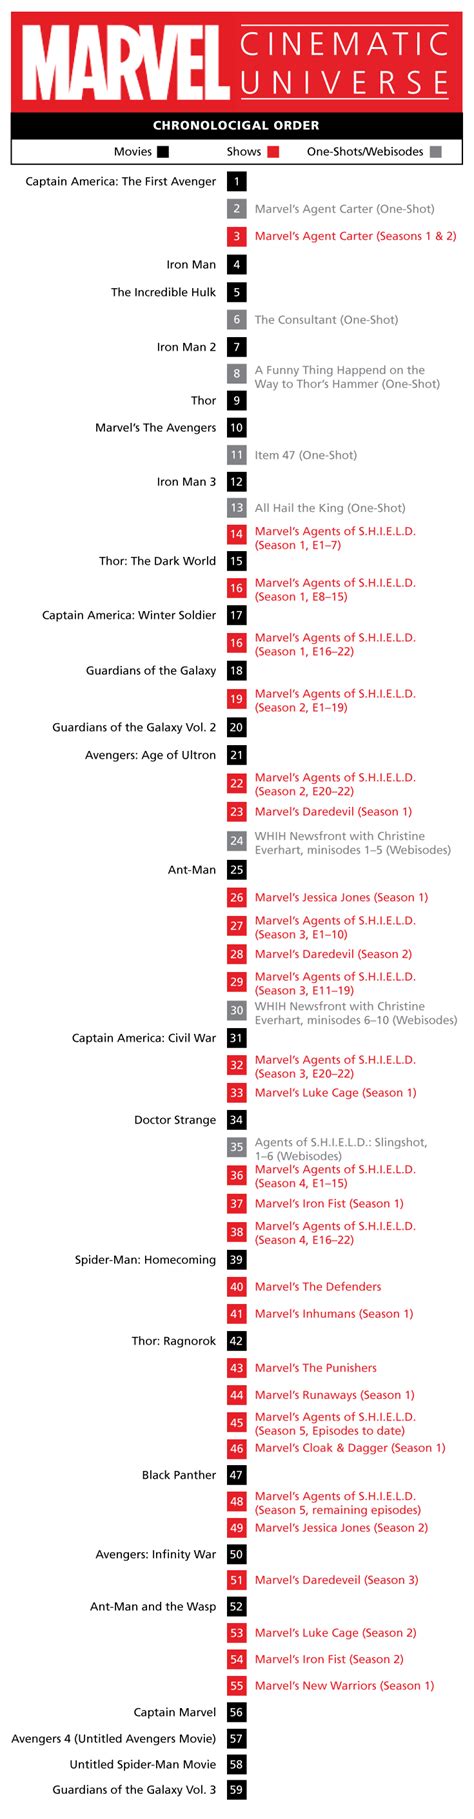 The Ultimate MCU Timeline | Marvel movies, Marvel movies in order, Marvel movies list